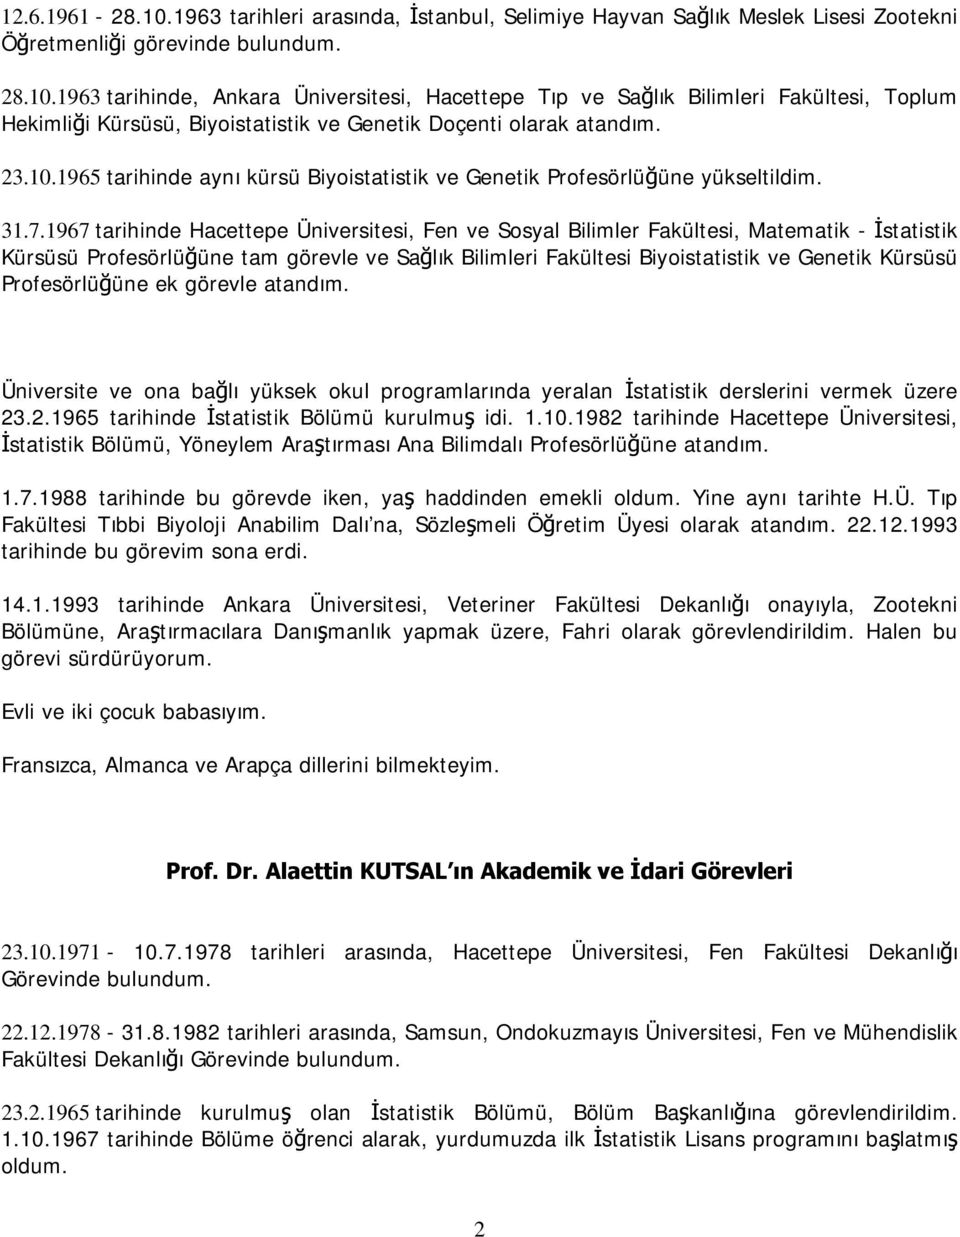 1967 tarihinde Hacettepe Üniversitesi, Fen ve Sosyal Bilimler Fakültesi, Matematik - İstatistik Kürsüsü Profesörlüğüne tam görevle ve Sağlık Bilimleri Fakültesi Biyoistatistik ve Genetik Kürsüsü